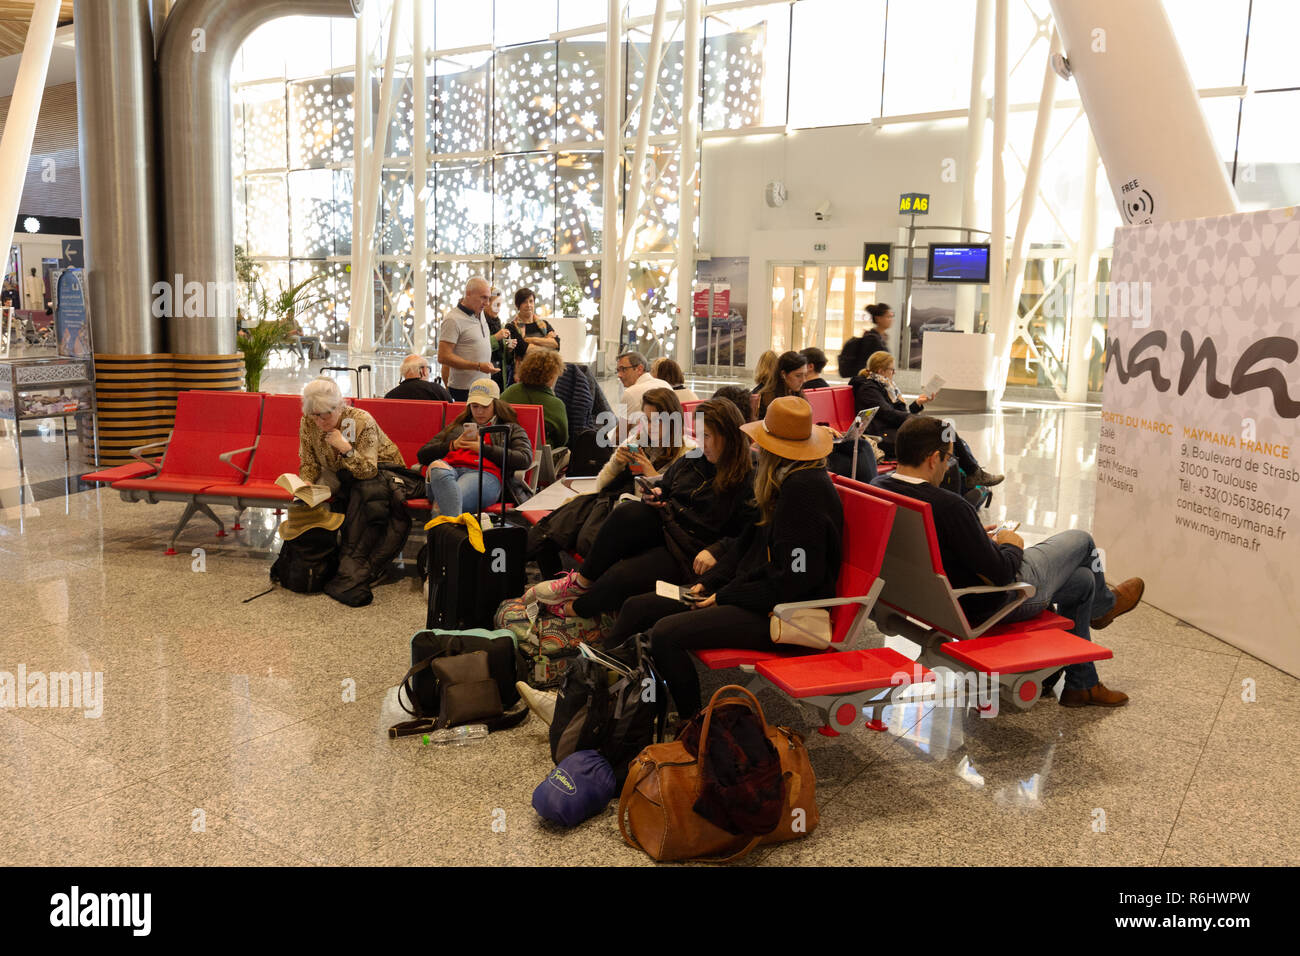 Marrakech Partenze aeroporto, - la gente seduta in attesa al gate lounge di partenza, l'aeroporto di Marrakech, Marocco Africa del Nord Foto Stock